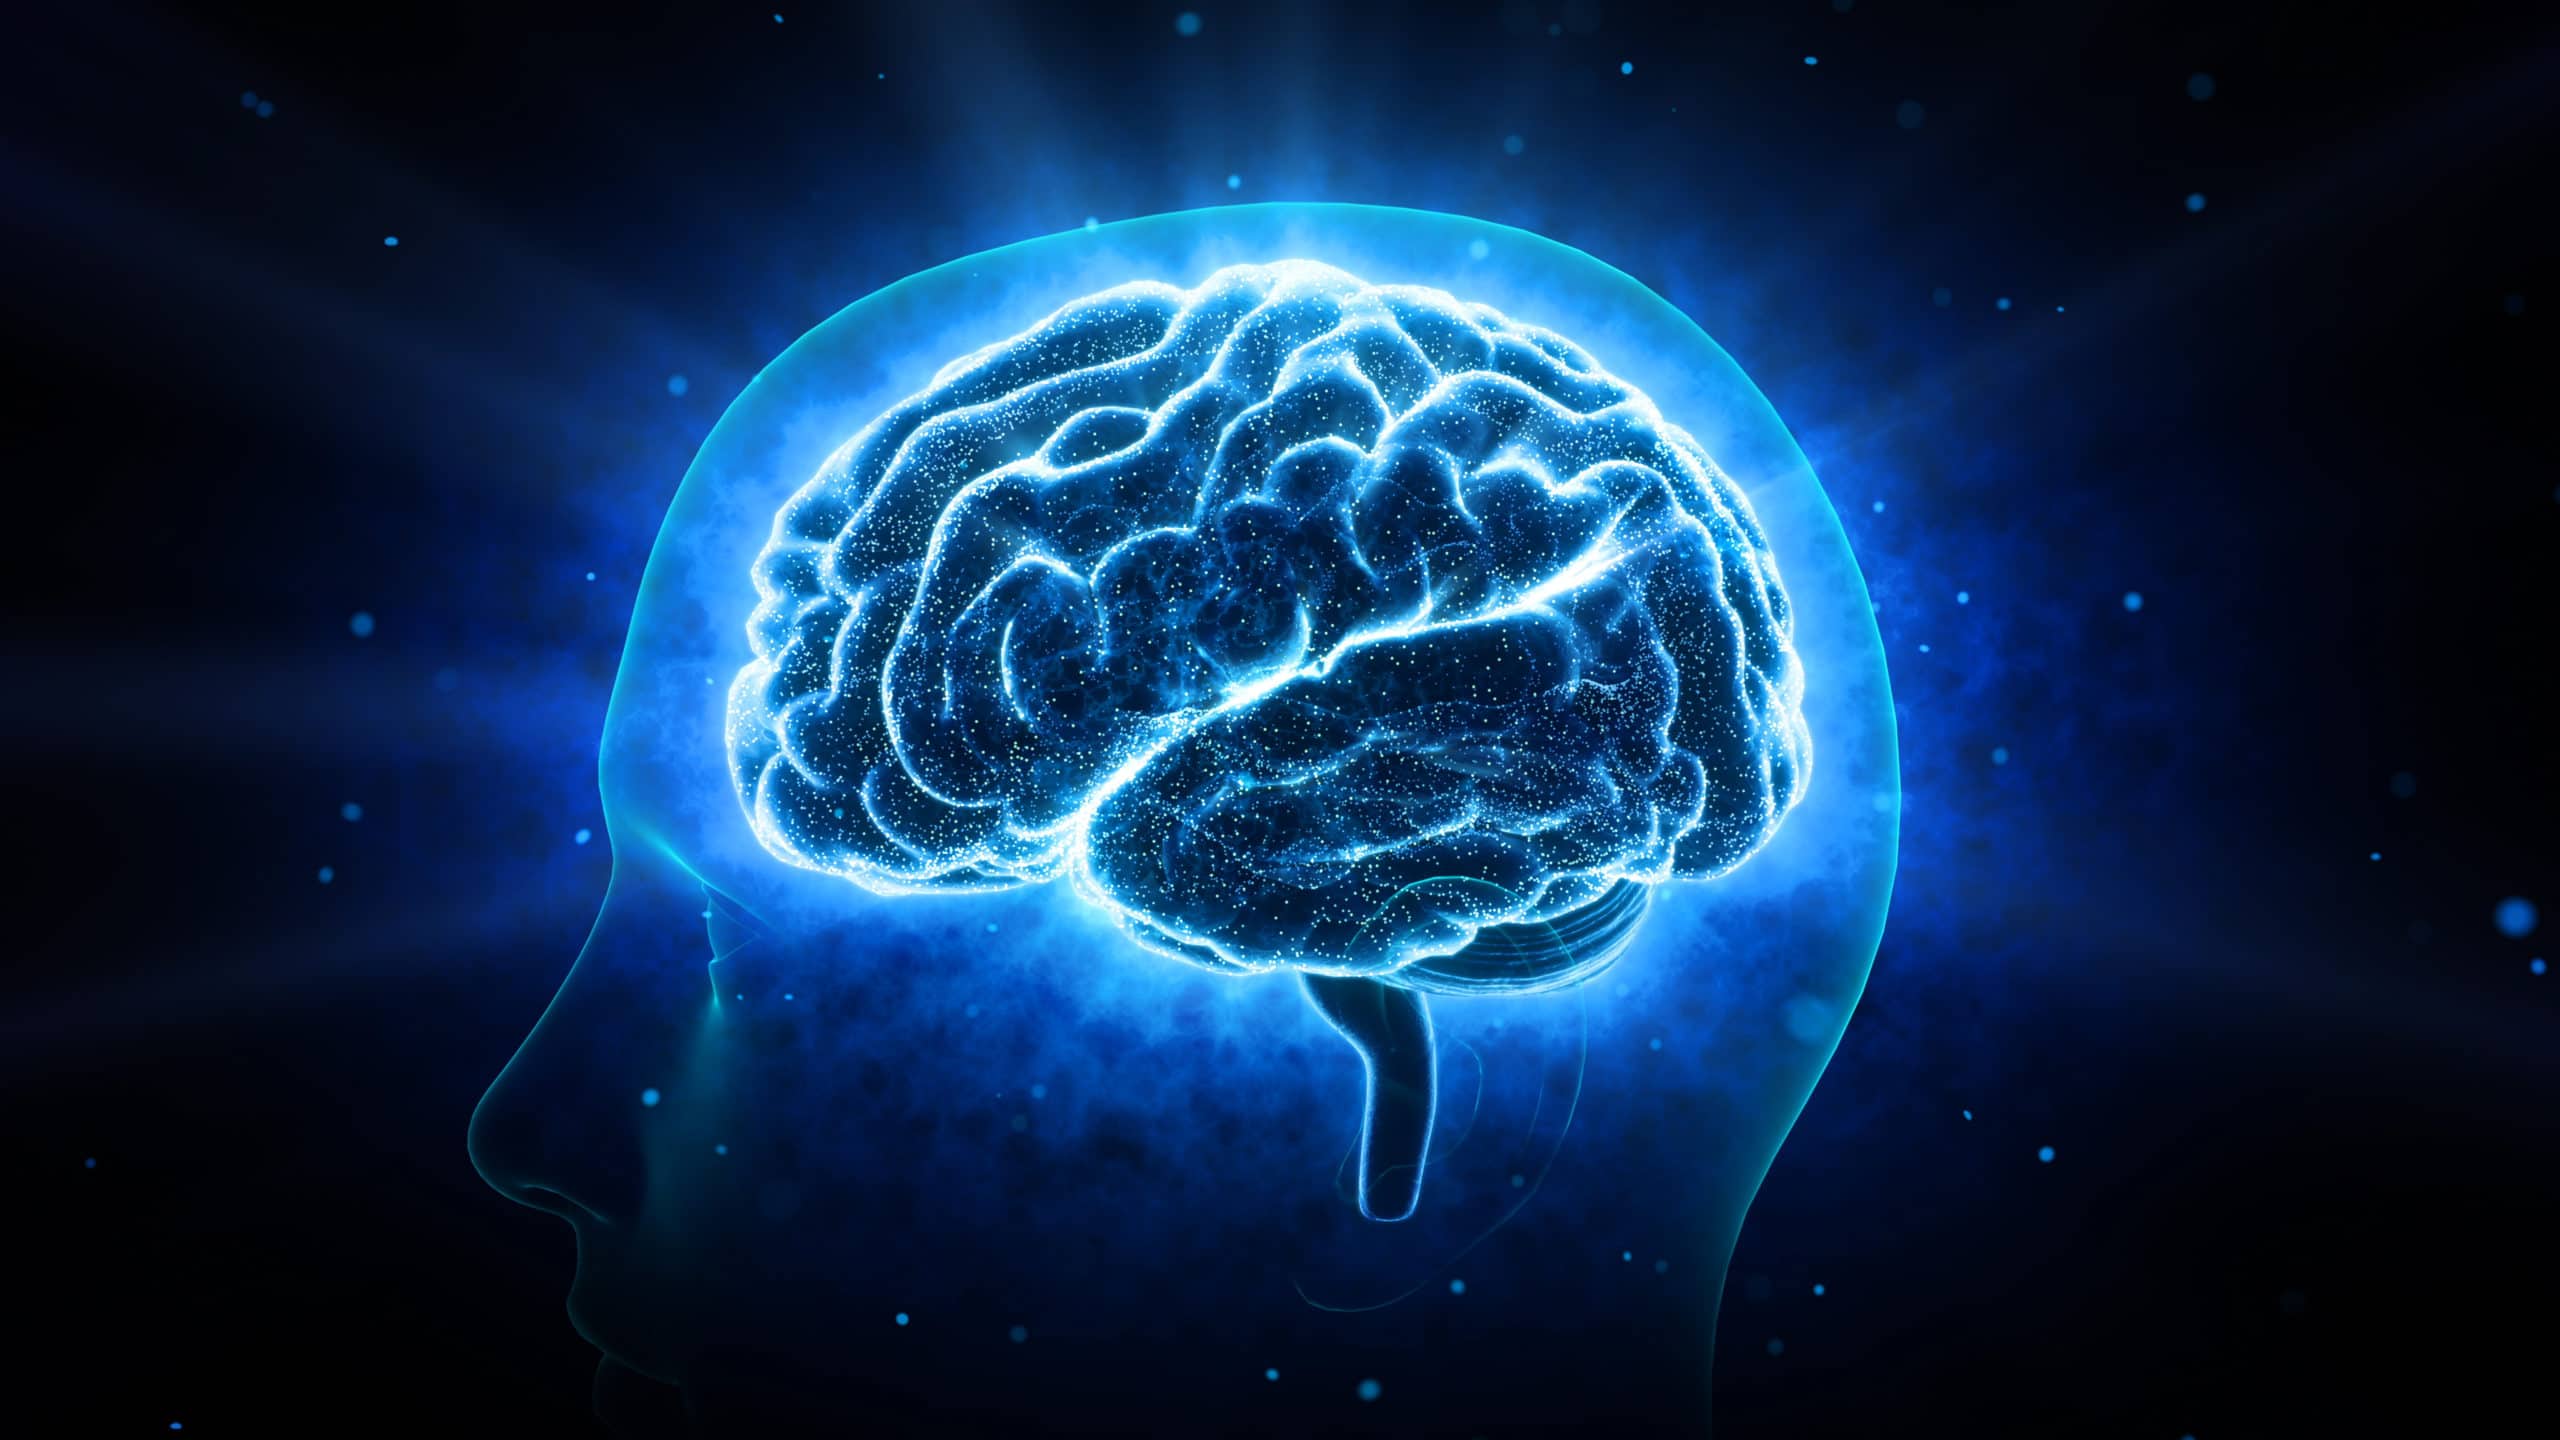 Human Brain - mental idea mind